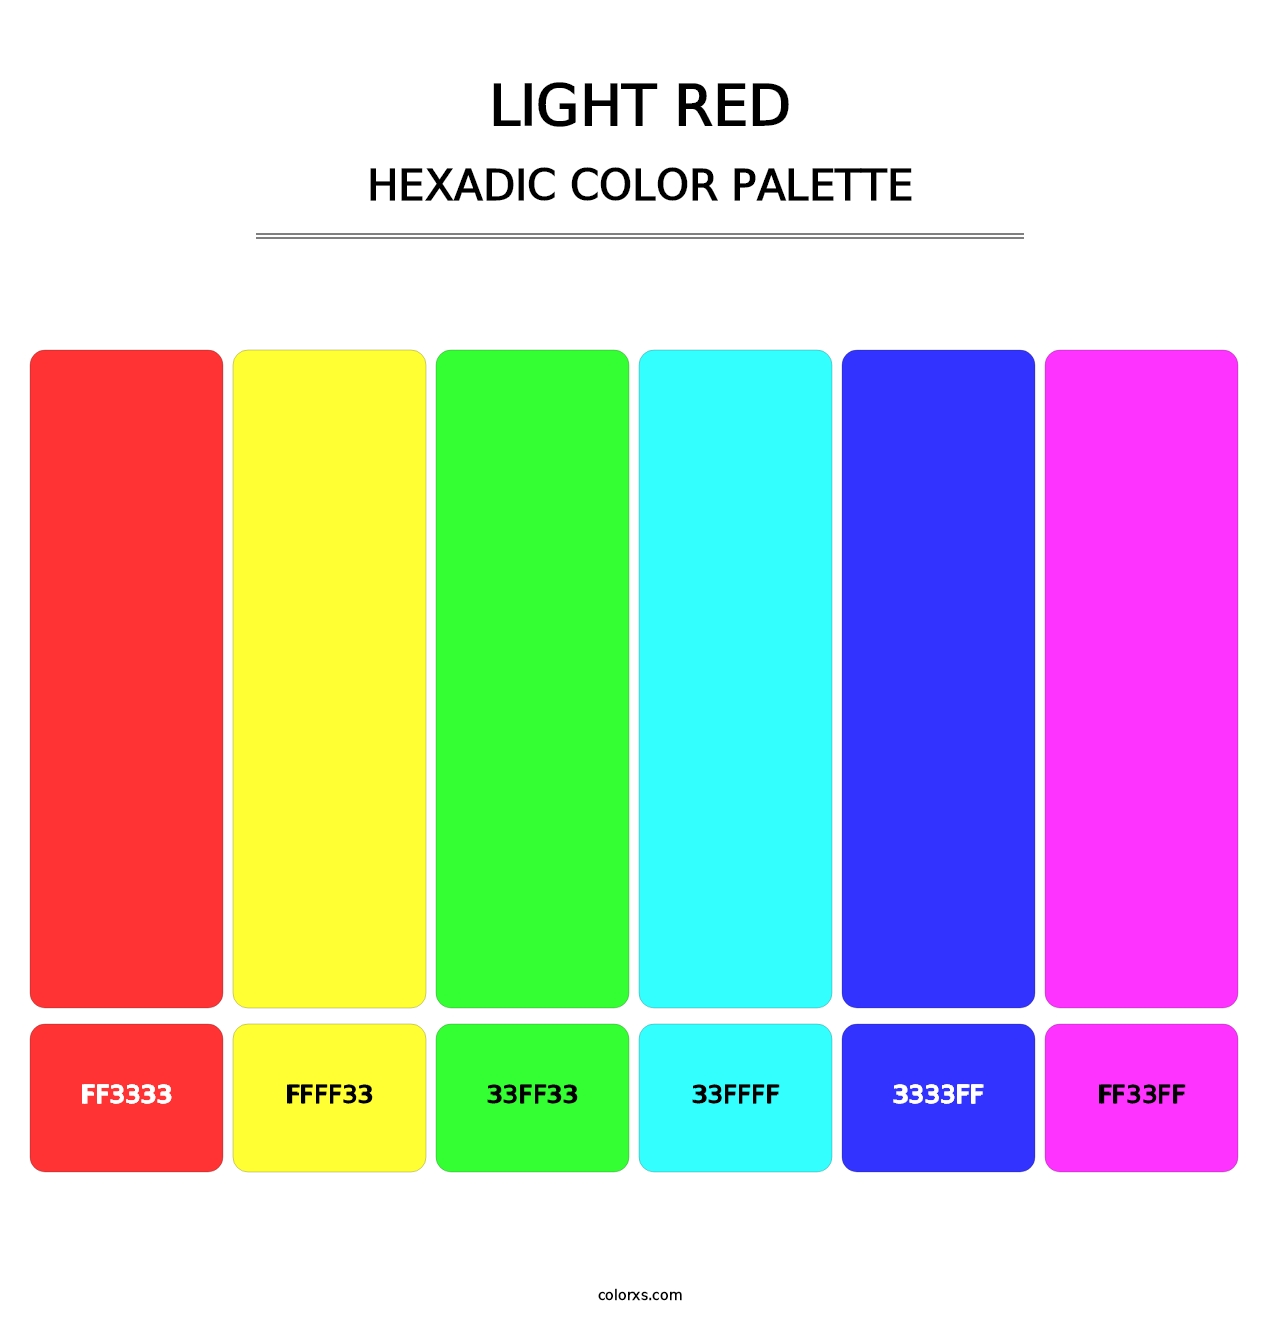 Light Red - Hexadic Color Palette